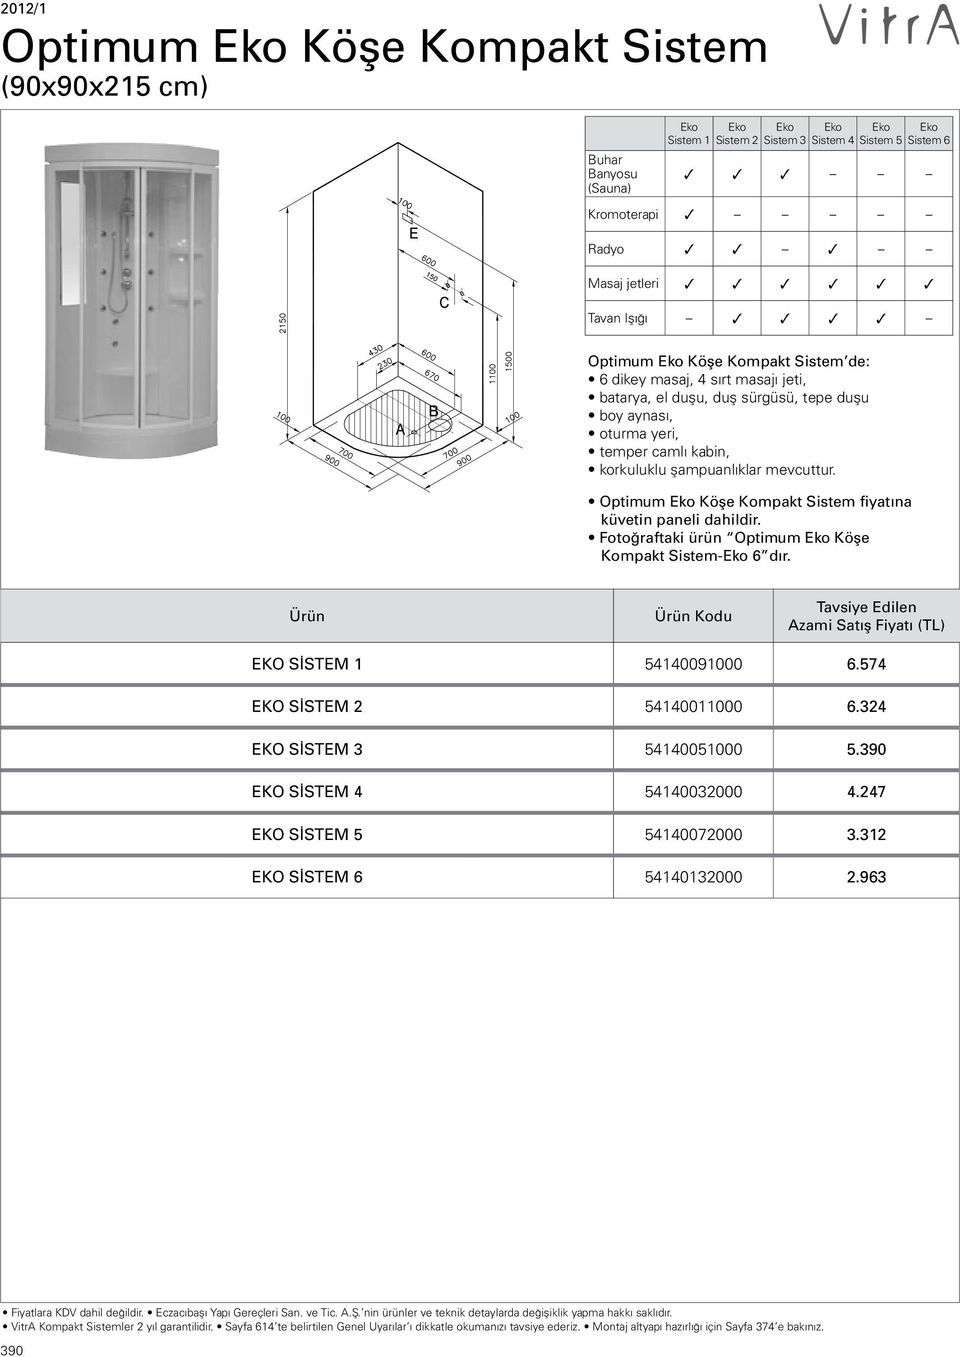 Optimum Eko Köşe Kompakt Sistem fiyat na küvetin paneli dahildir. Foto raftaki ürün Optimum Eko Köşe Kompakt SistemEko 6 dır. Ürün Ürün Kodu Tavsiye Edilen Azami EKO SİSTEM 1 54140091000 6.